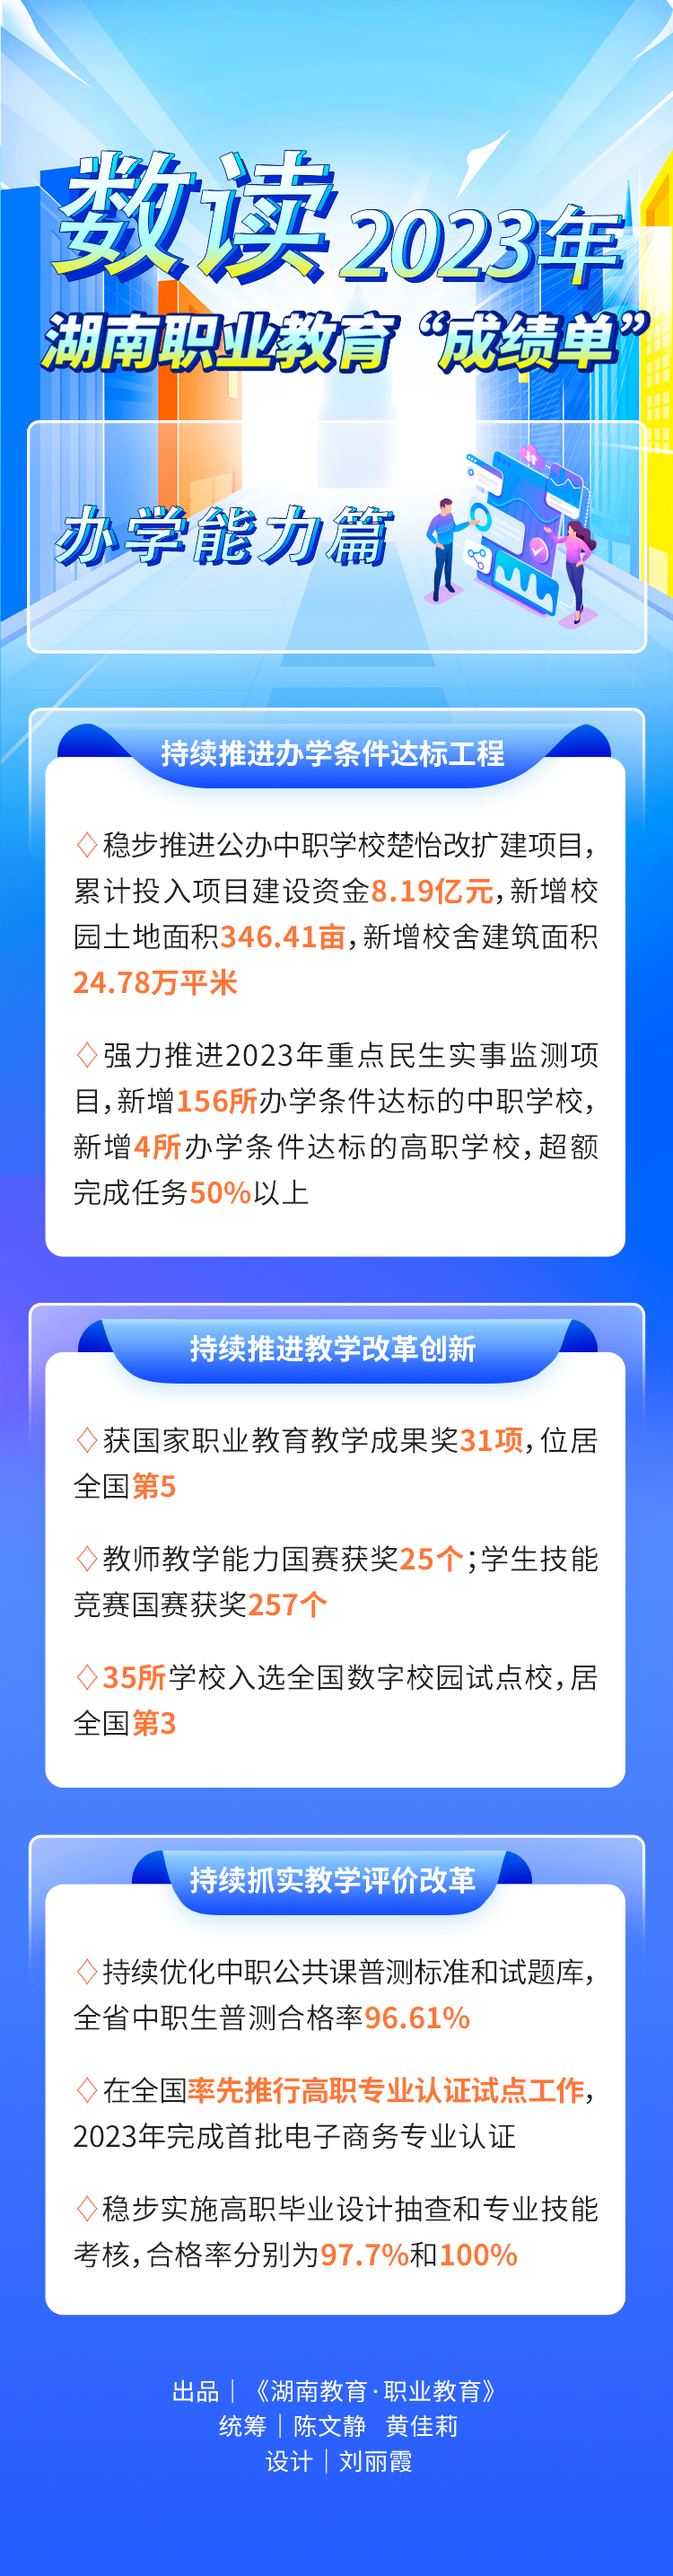 湖南省职业教育2023年成绩单、2024年工作要点来了